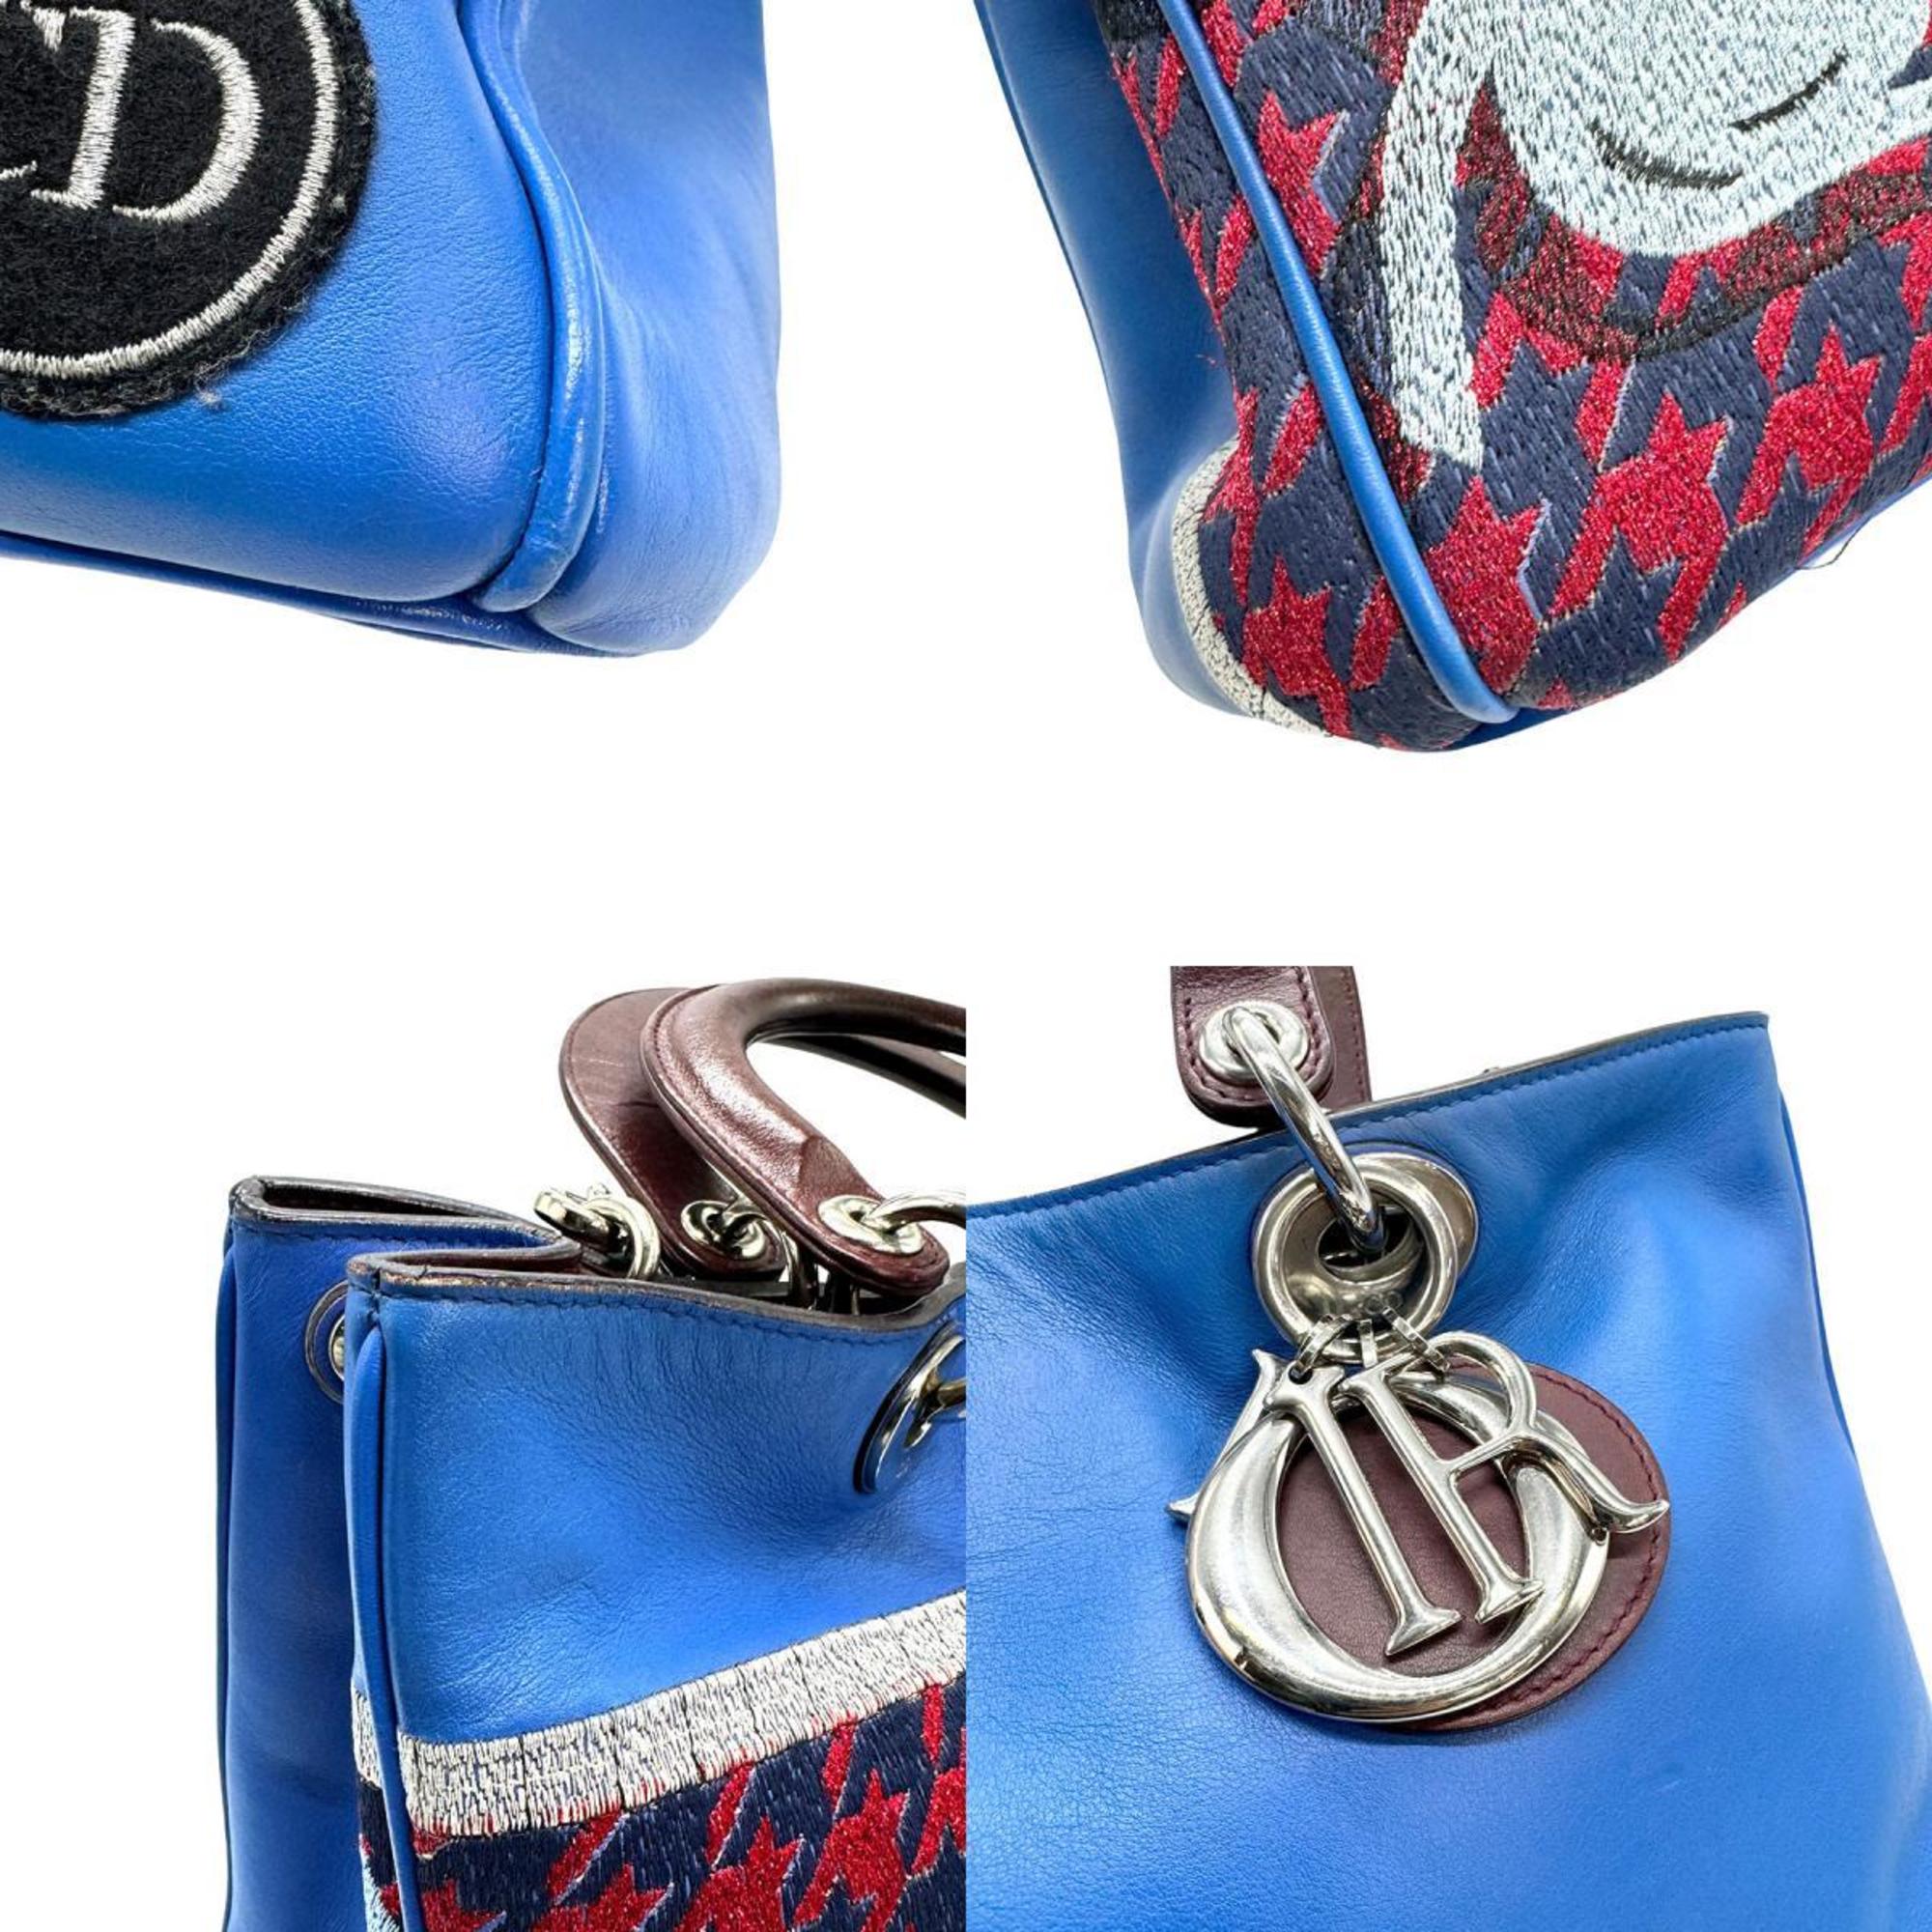 Christian Dior Shoulder Bag Handbag Cannage Leather Blue x Wine Red Women's z0934